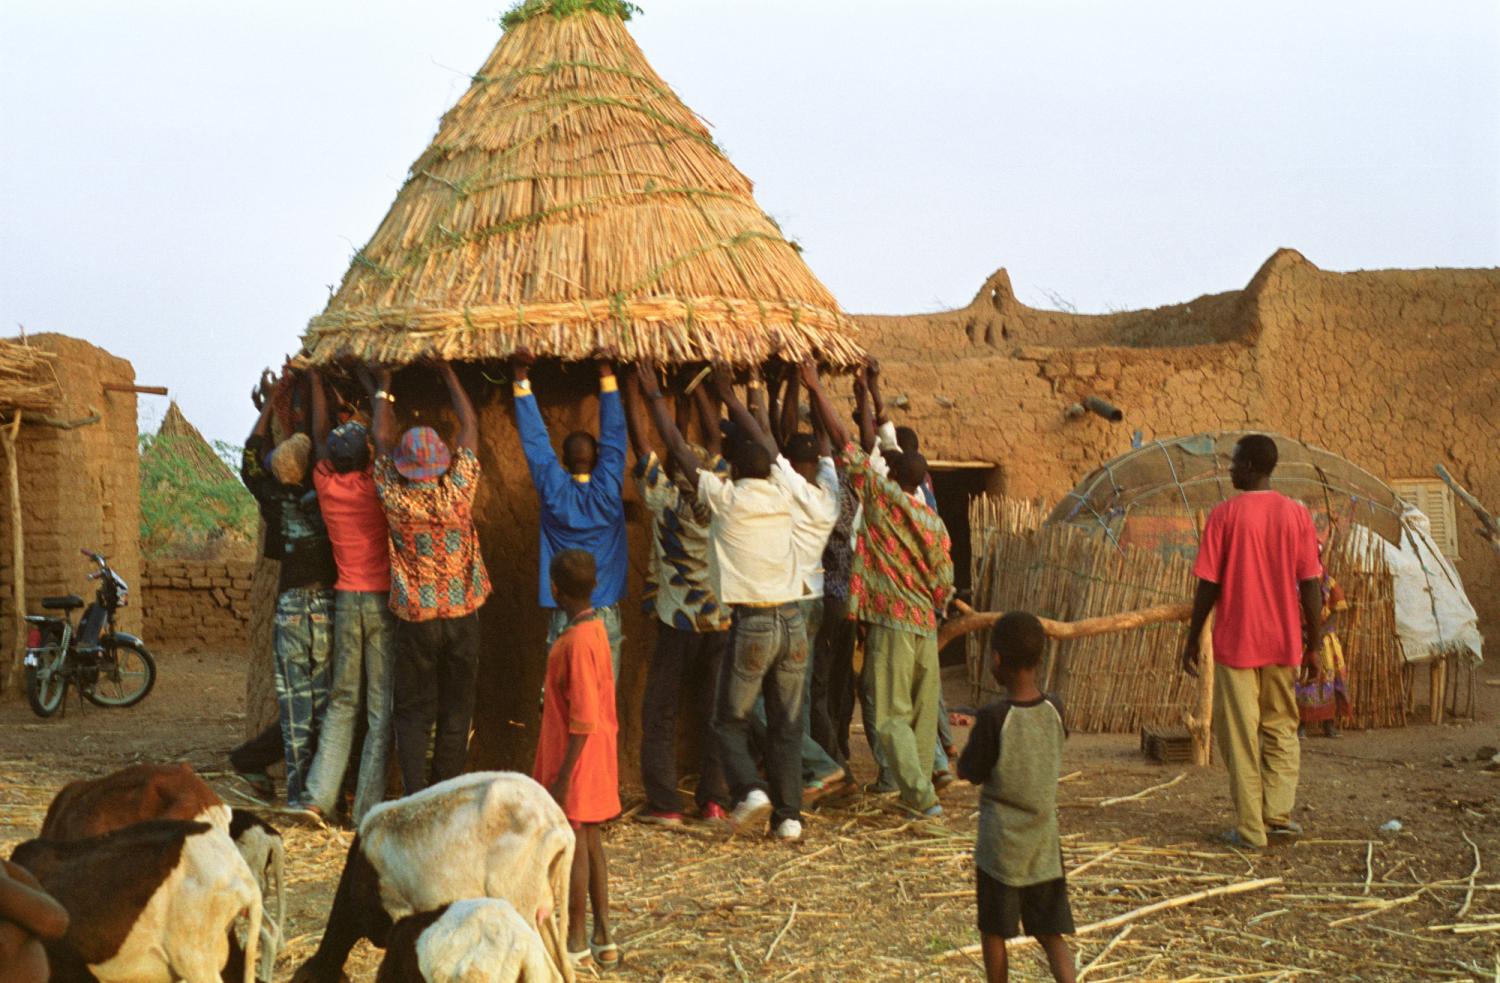 Des hommes soulèvent un toit conique fait de mil pour le poser sur un petit édifice circulaire : une cuisine. Bosseye Dogabe, Burkina Faso, mai 2008.